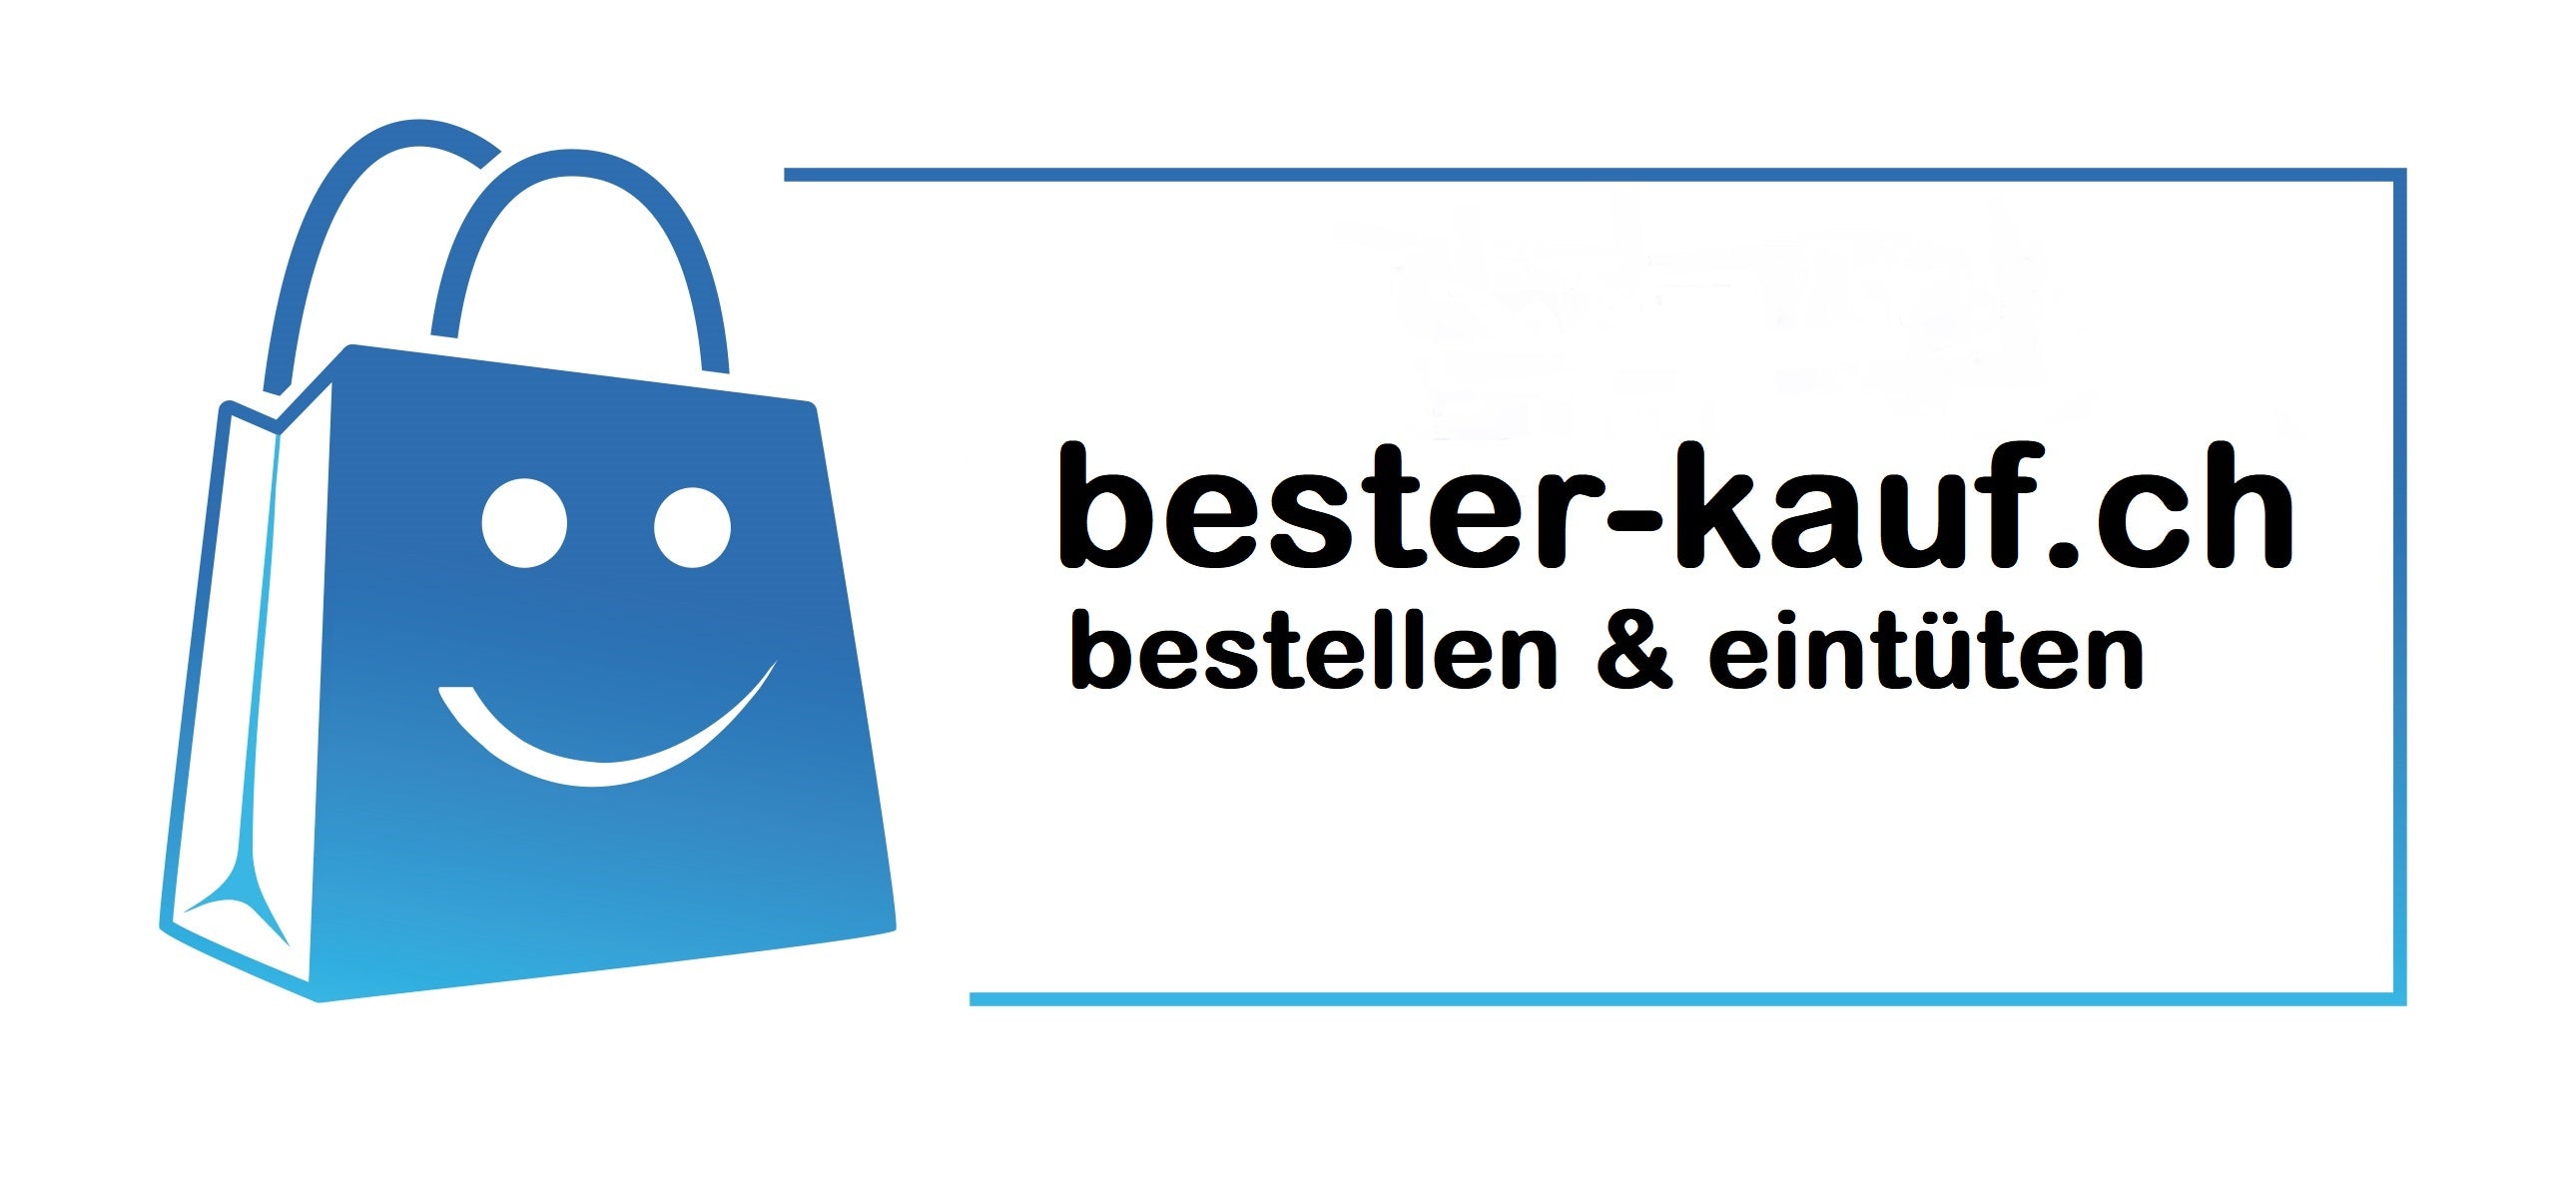 (c) Bester-kauf.ch